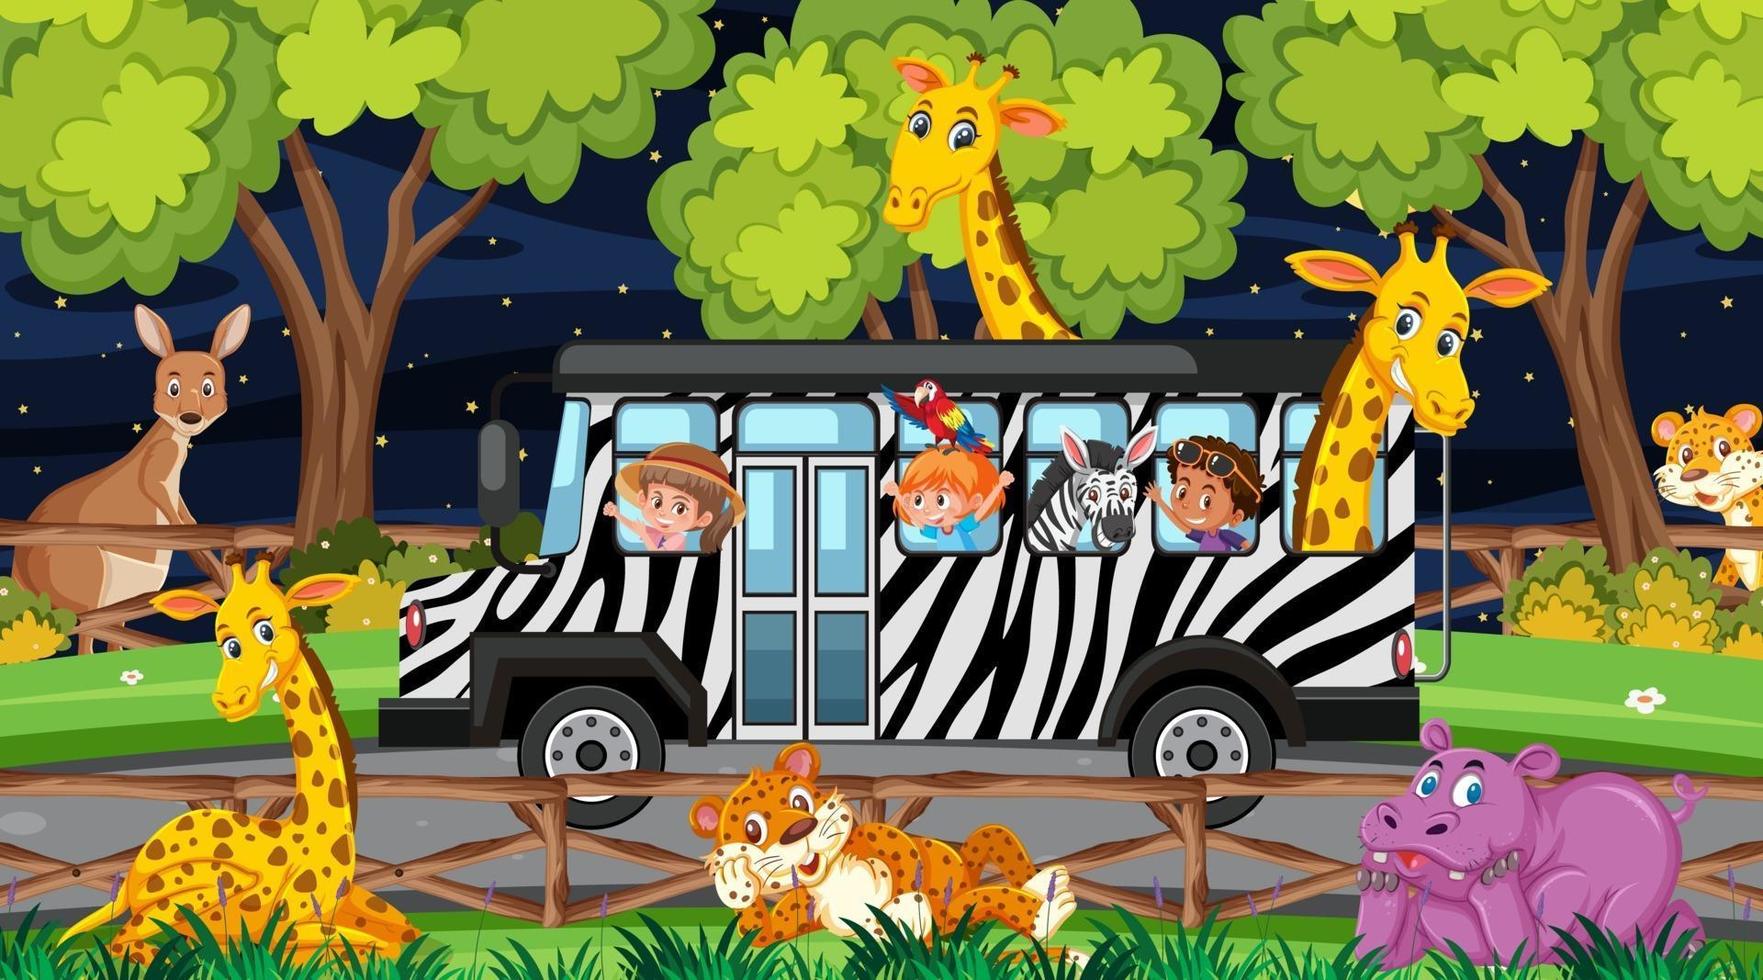 animali nella scena del safari con i bambini nell'auto turistica vettore